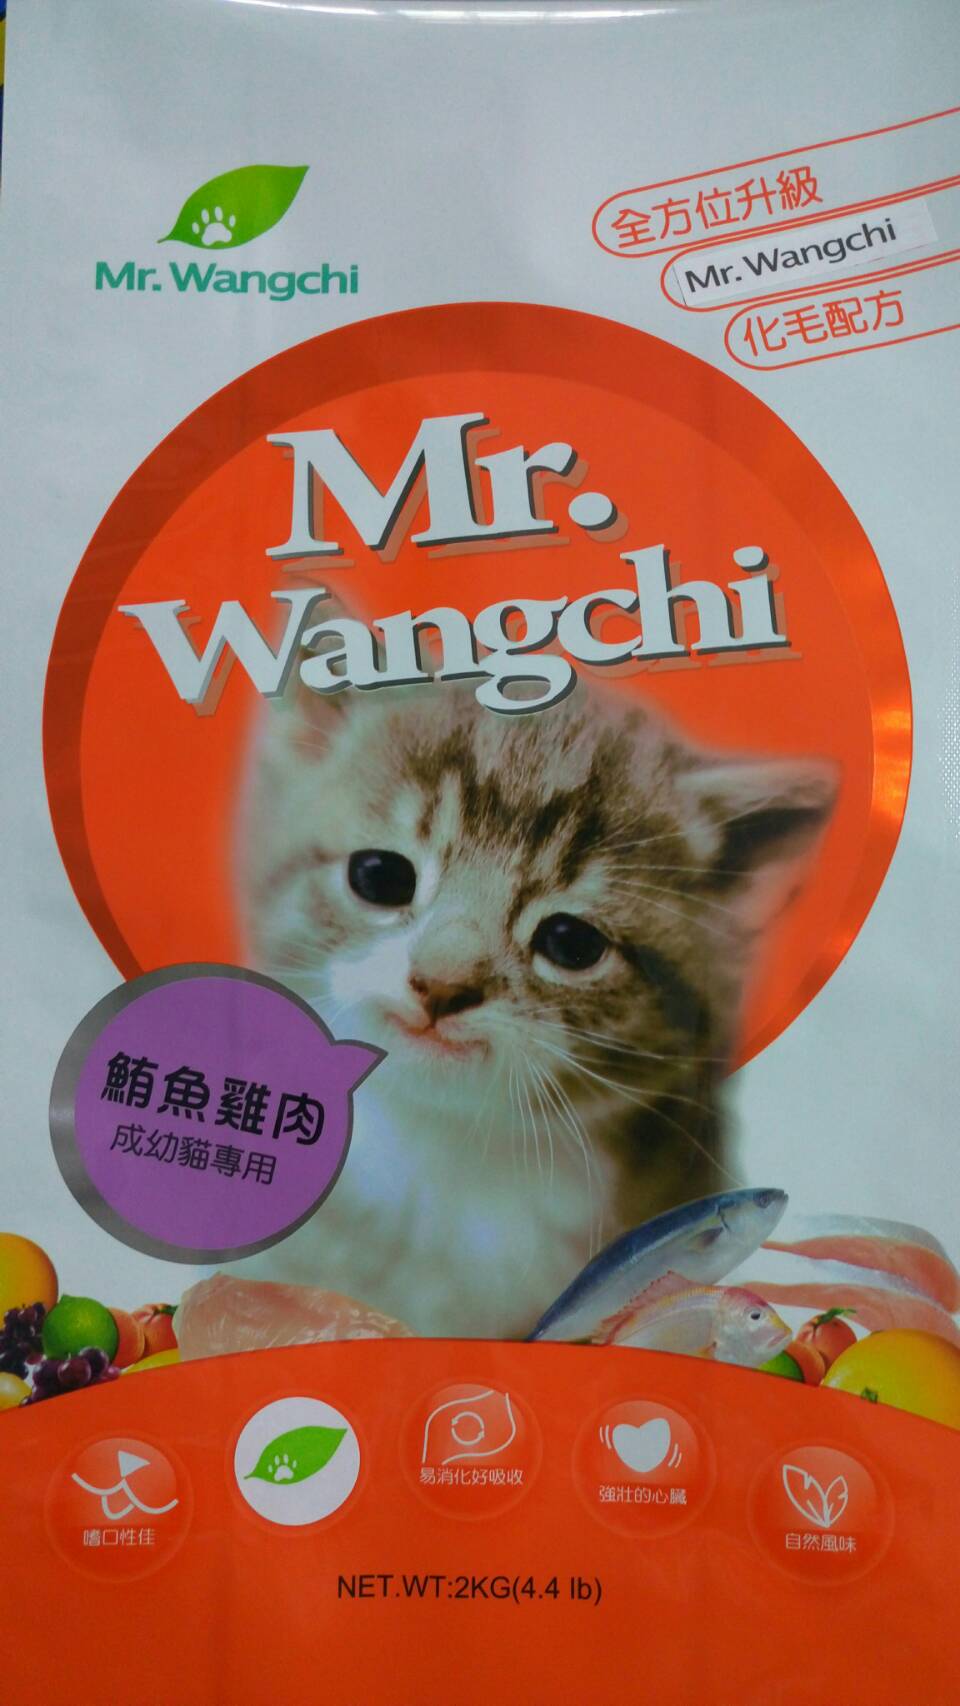 旺奇先生:鮪魚雞肉成幼貓專用
Mr.Wangchi